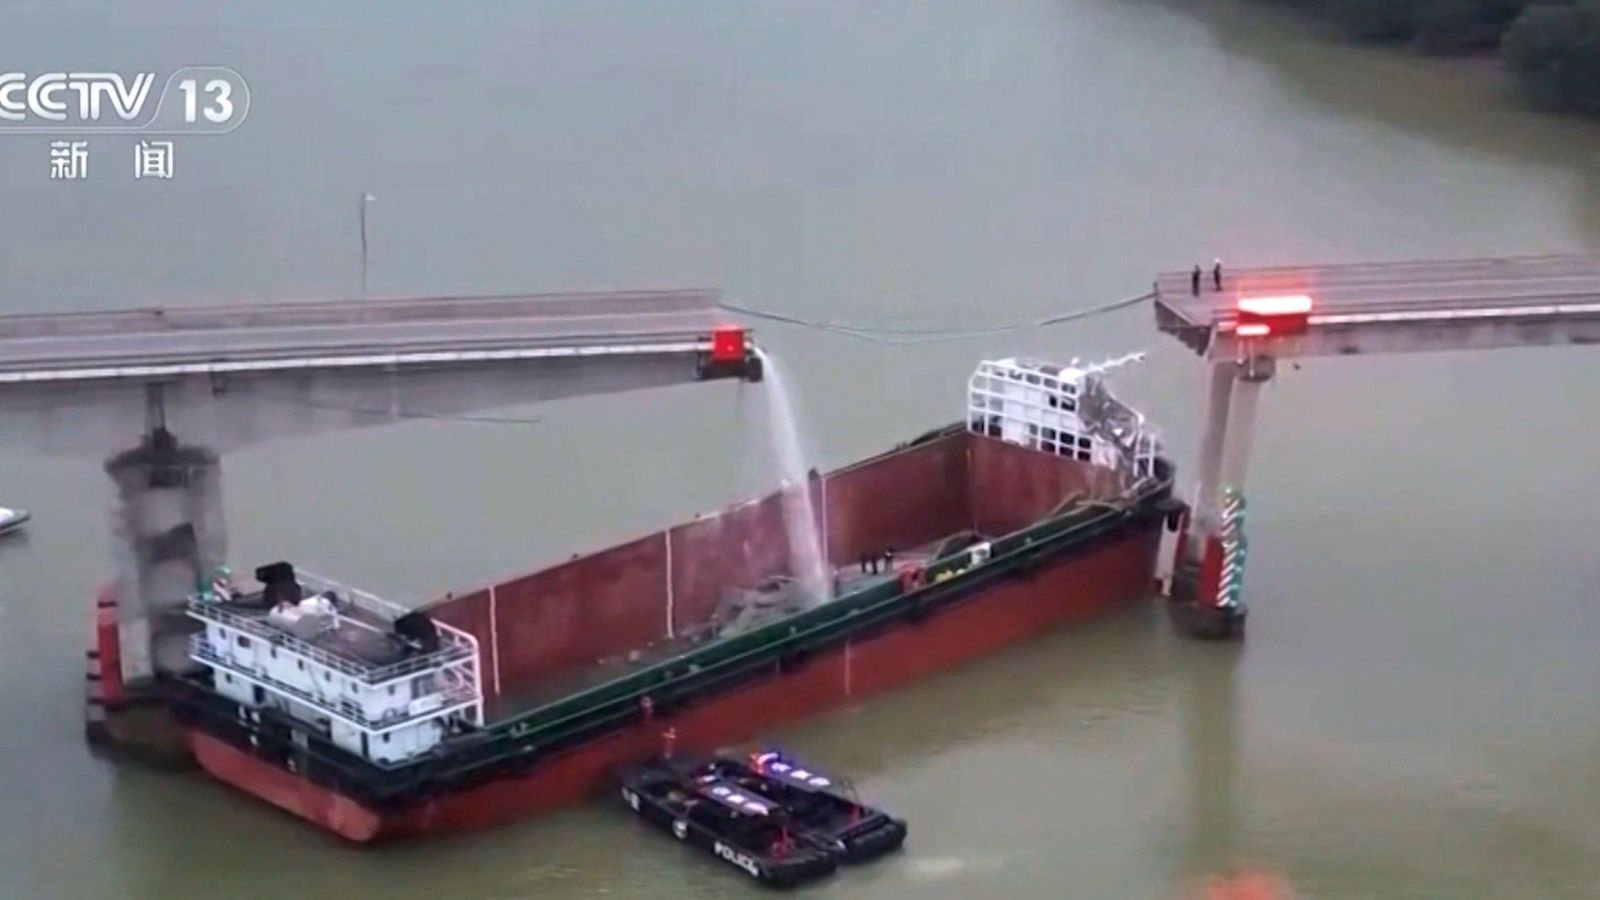 Chiny: Pięć osób zginęło w wyniku zderzenia barki z mostem, a pojazdy zatonęły w wodach poniżej  wiadomości ze świata